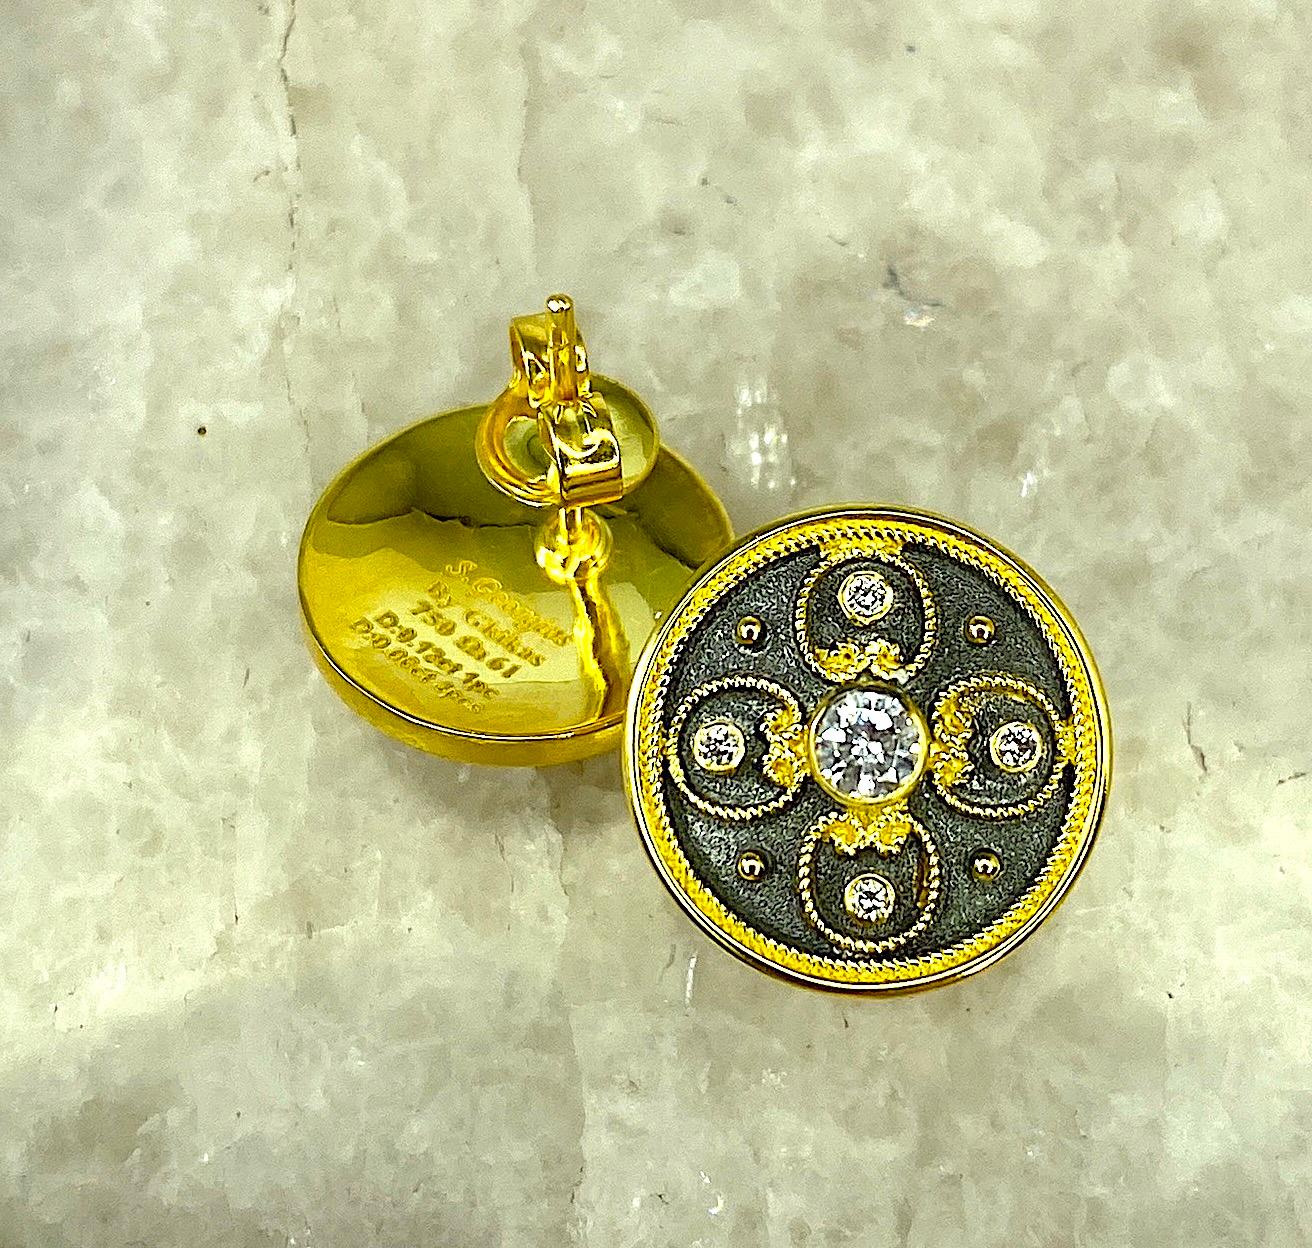 Die Designer-Ohrringe von S.Georgios sind aus massivem 18-karätigem Gelbgold handgefertigt und werden nach Maß angefertigt. Die atemberaubenden Ohrringe sind mikroskopisch klein mit Granulaten, Perlen und Drähten verziert, die wie der Buchstabe